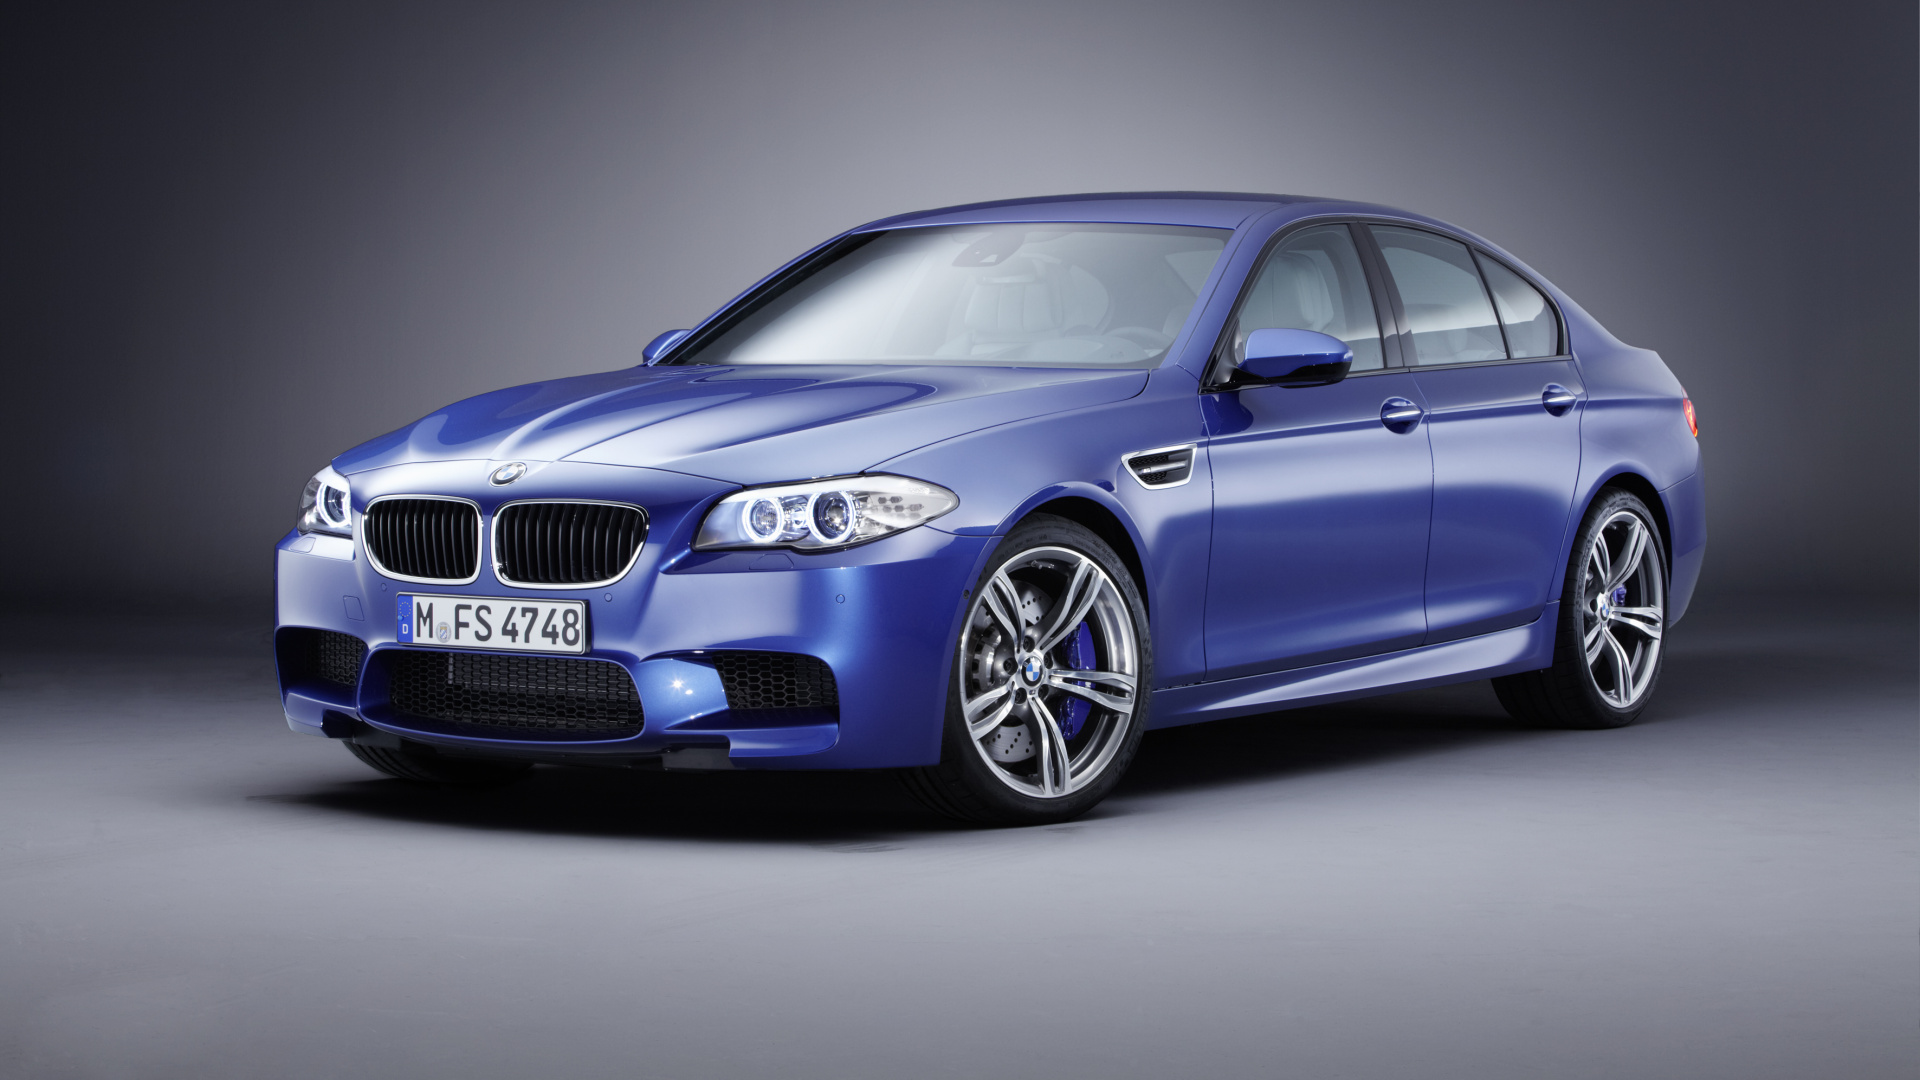 2013年BMW M5, 宝马, 宝马5系列F10, 宝马3系列, BMW1系 壁纸 1920x1080 允许